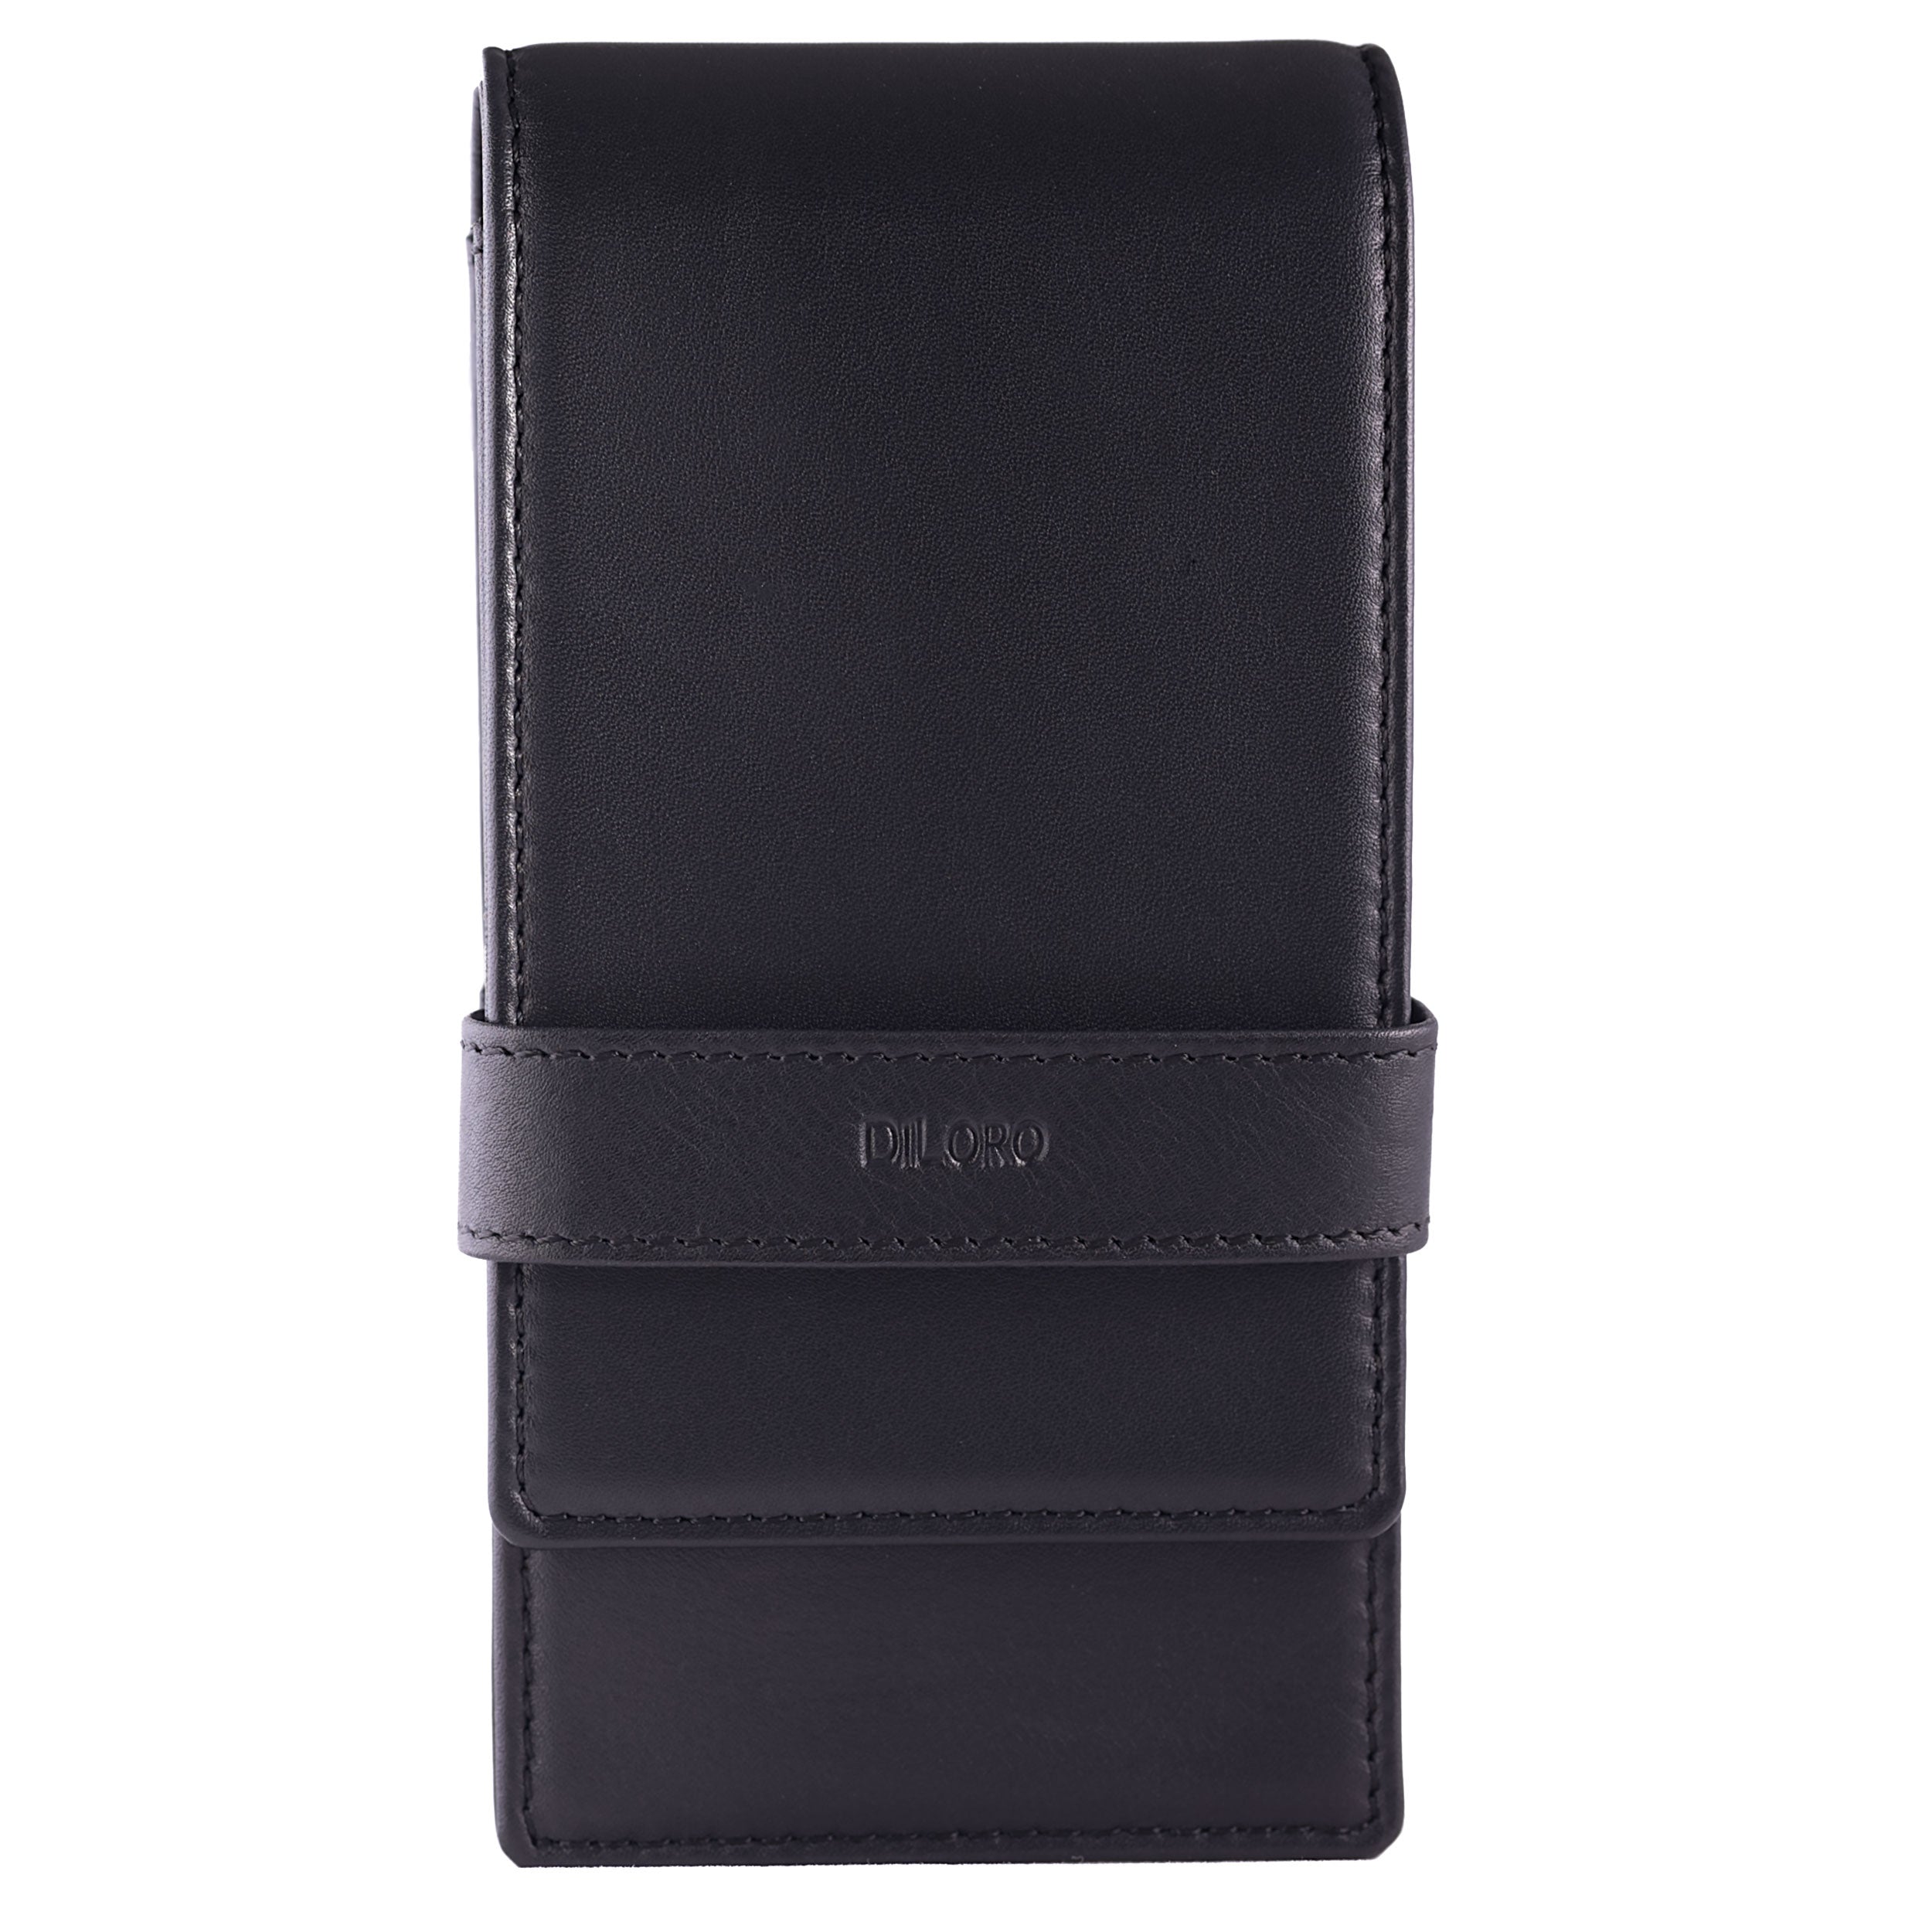 DiLoro Leather Zippered Triple/Quad Pen Case Premium Full Grain